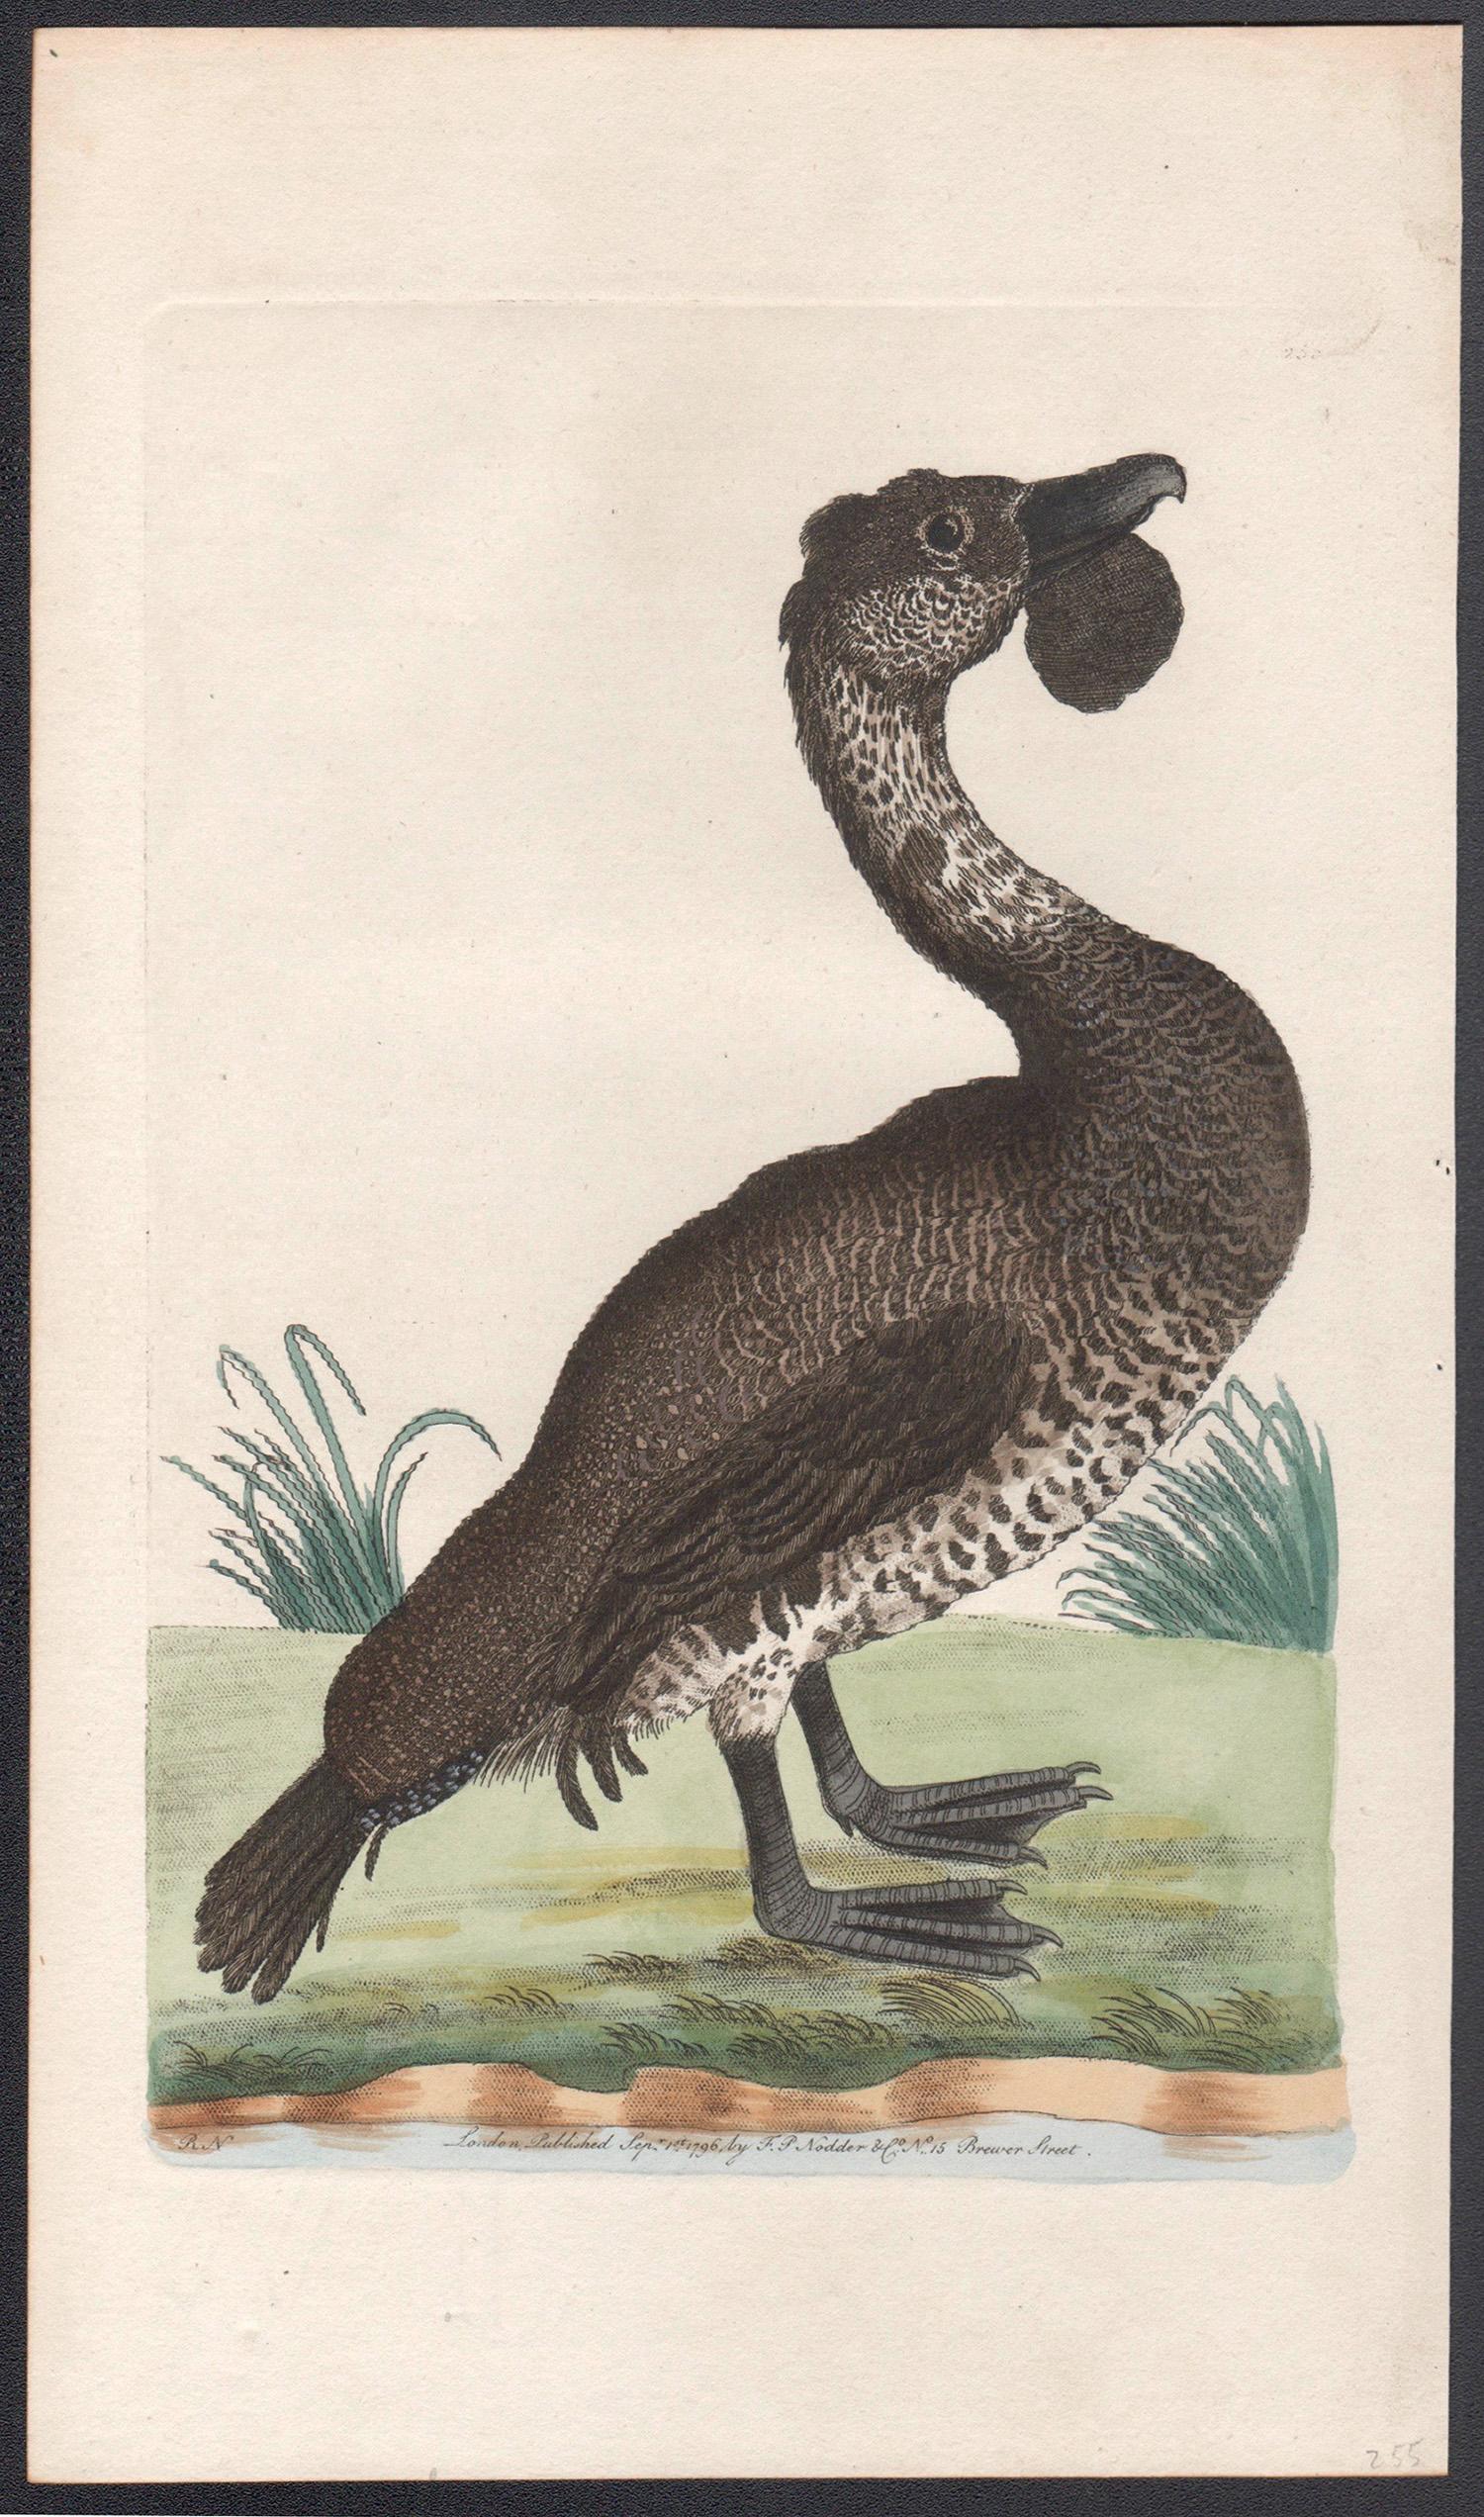 The Lobated Musk Duck, Australie, gravure avec coloration à la main originale, 1795 - Print de Richard Polydore Nodder